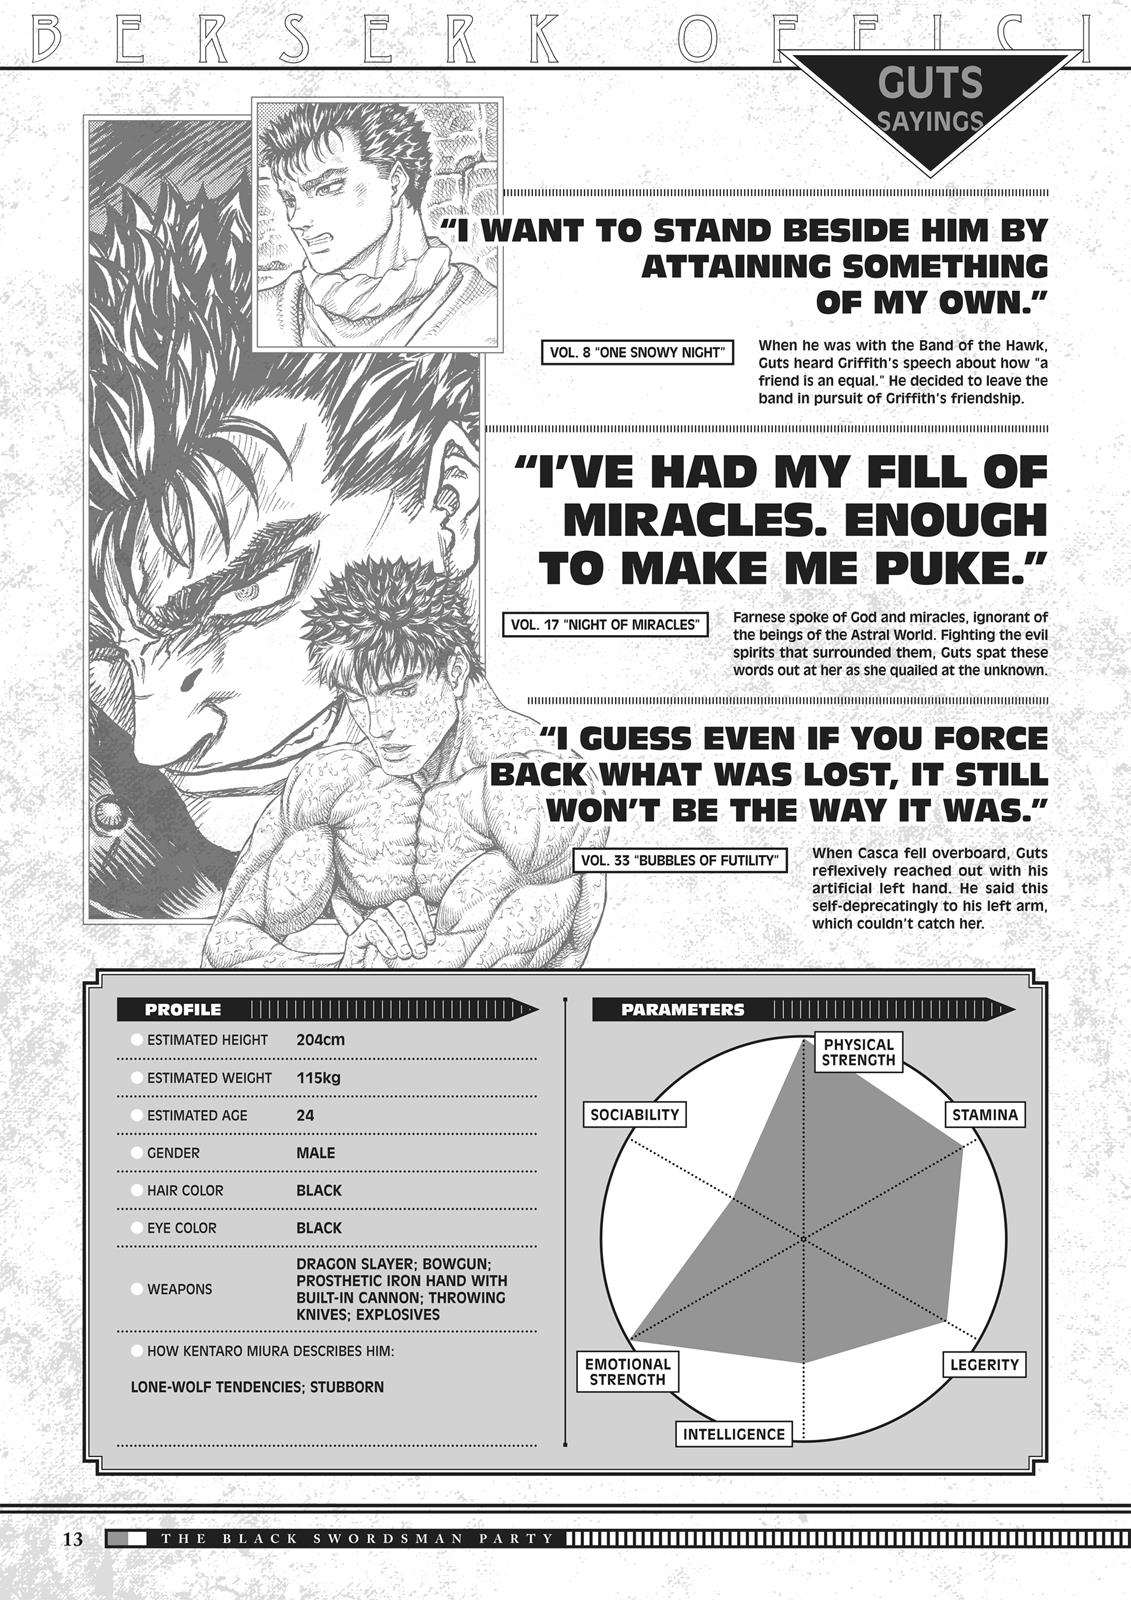 Berserk Manga Chapter 350.5 image 014